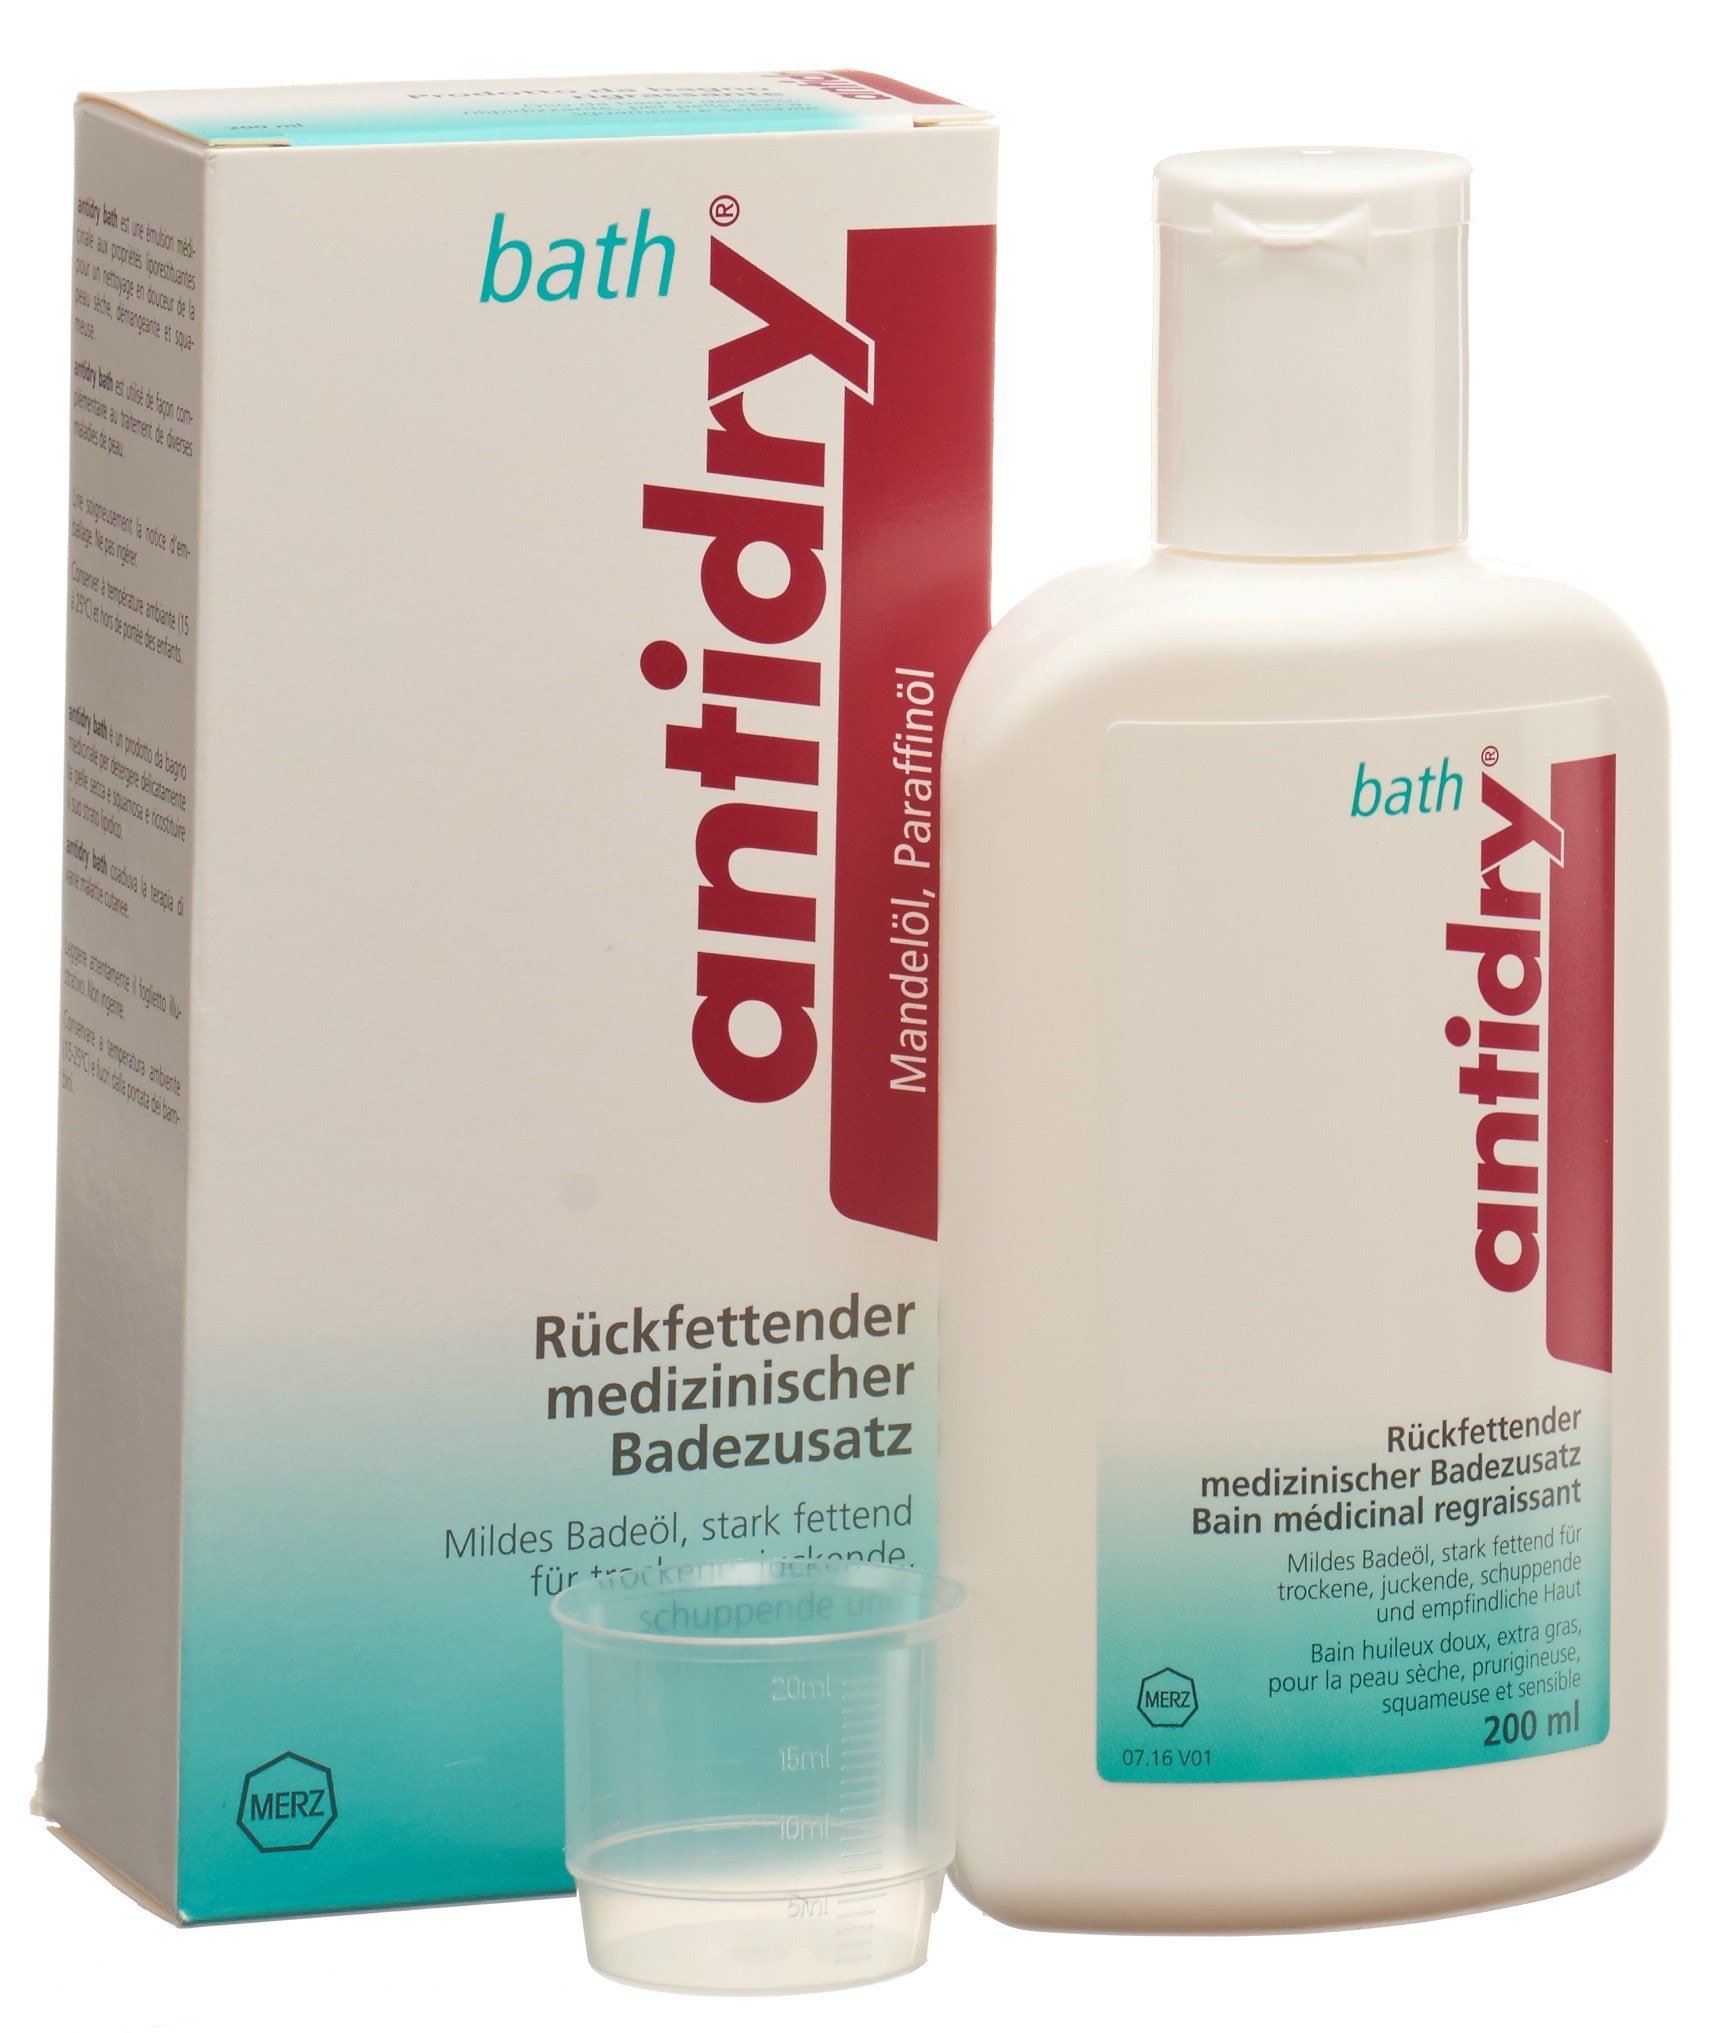 ANTIDRY bath ölige Lösung 200 ml